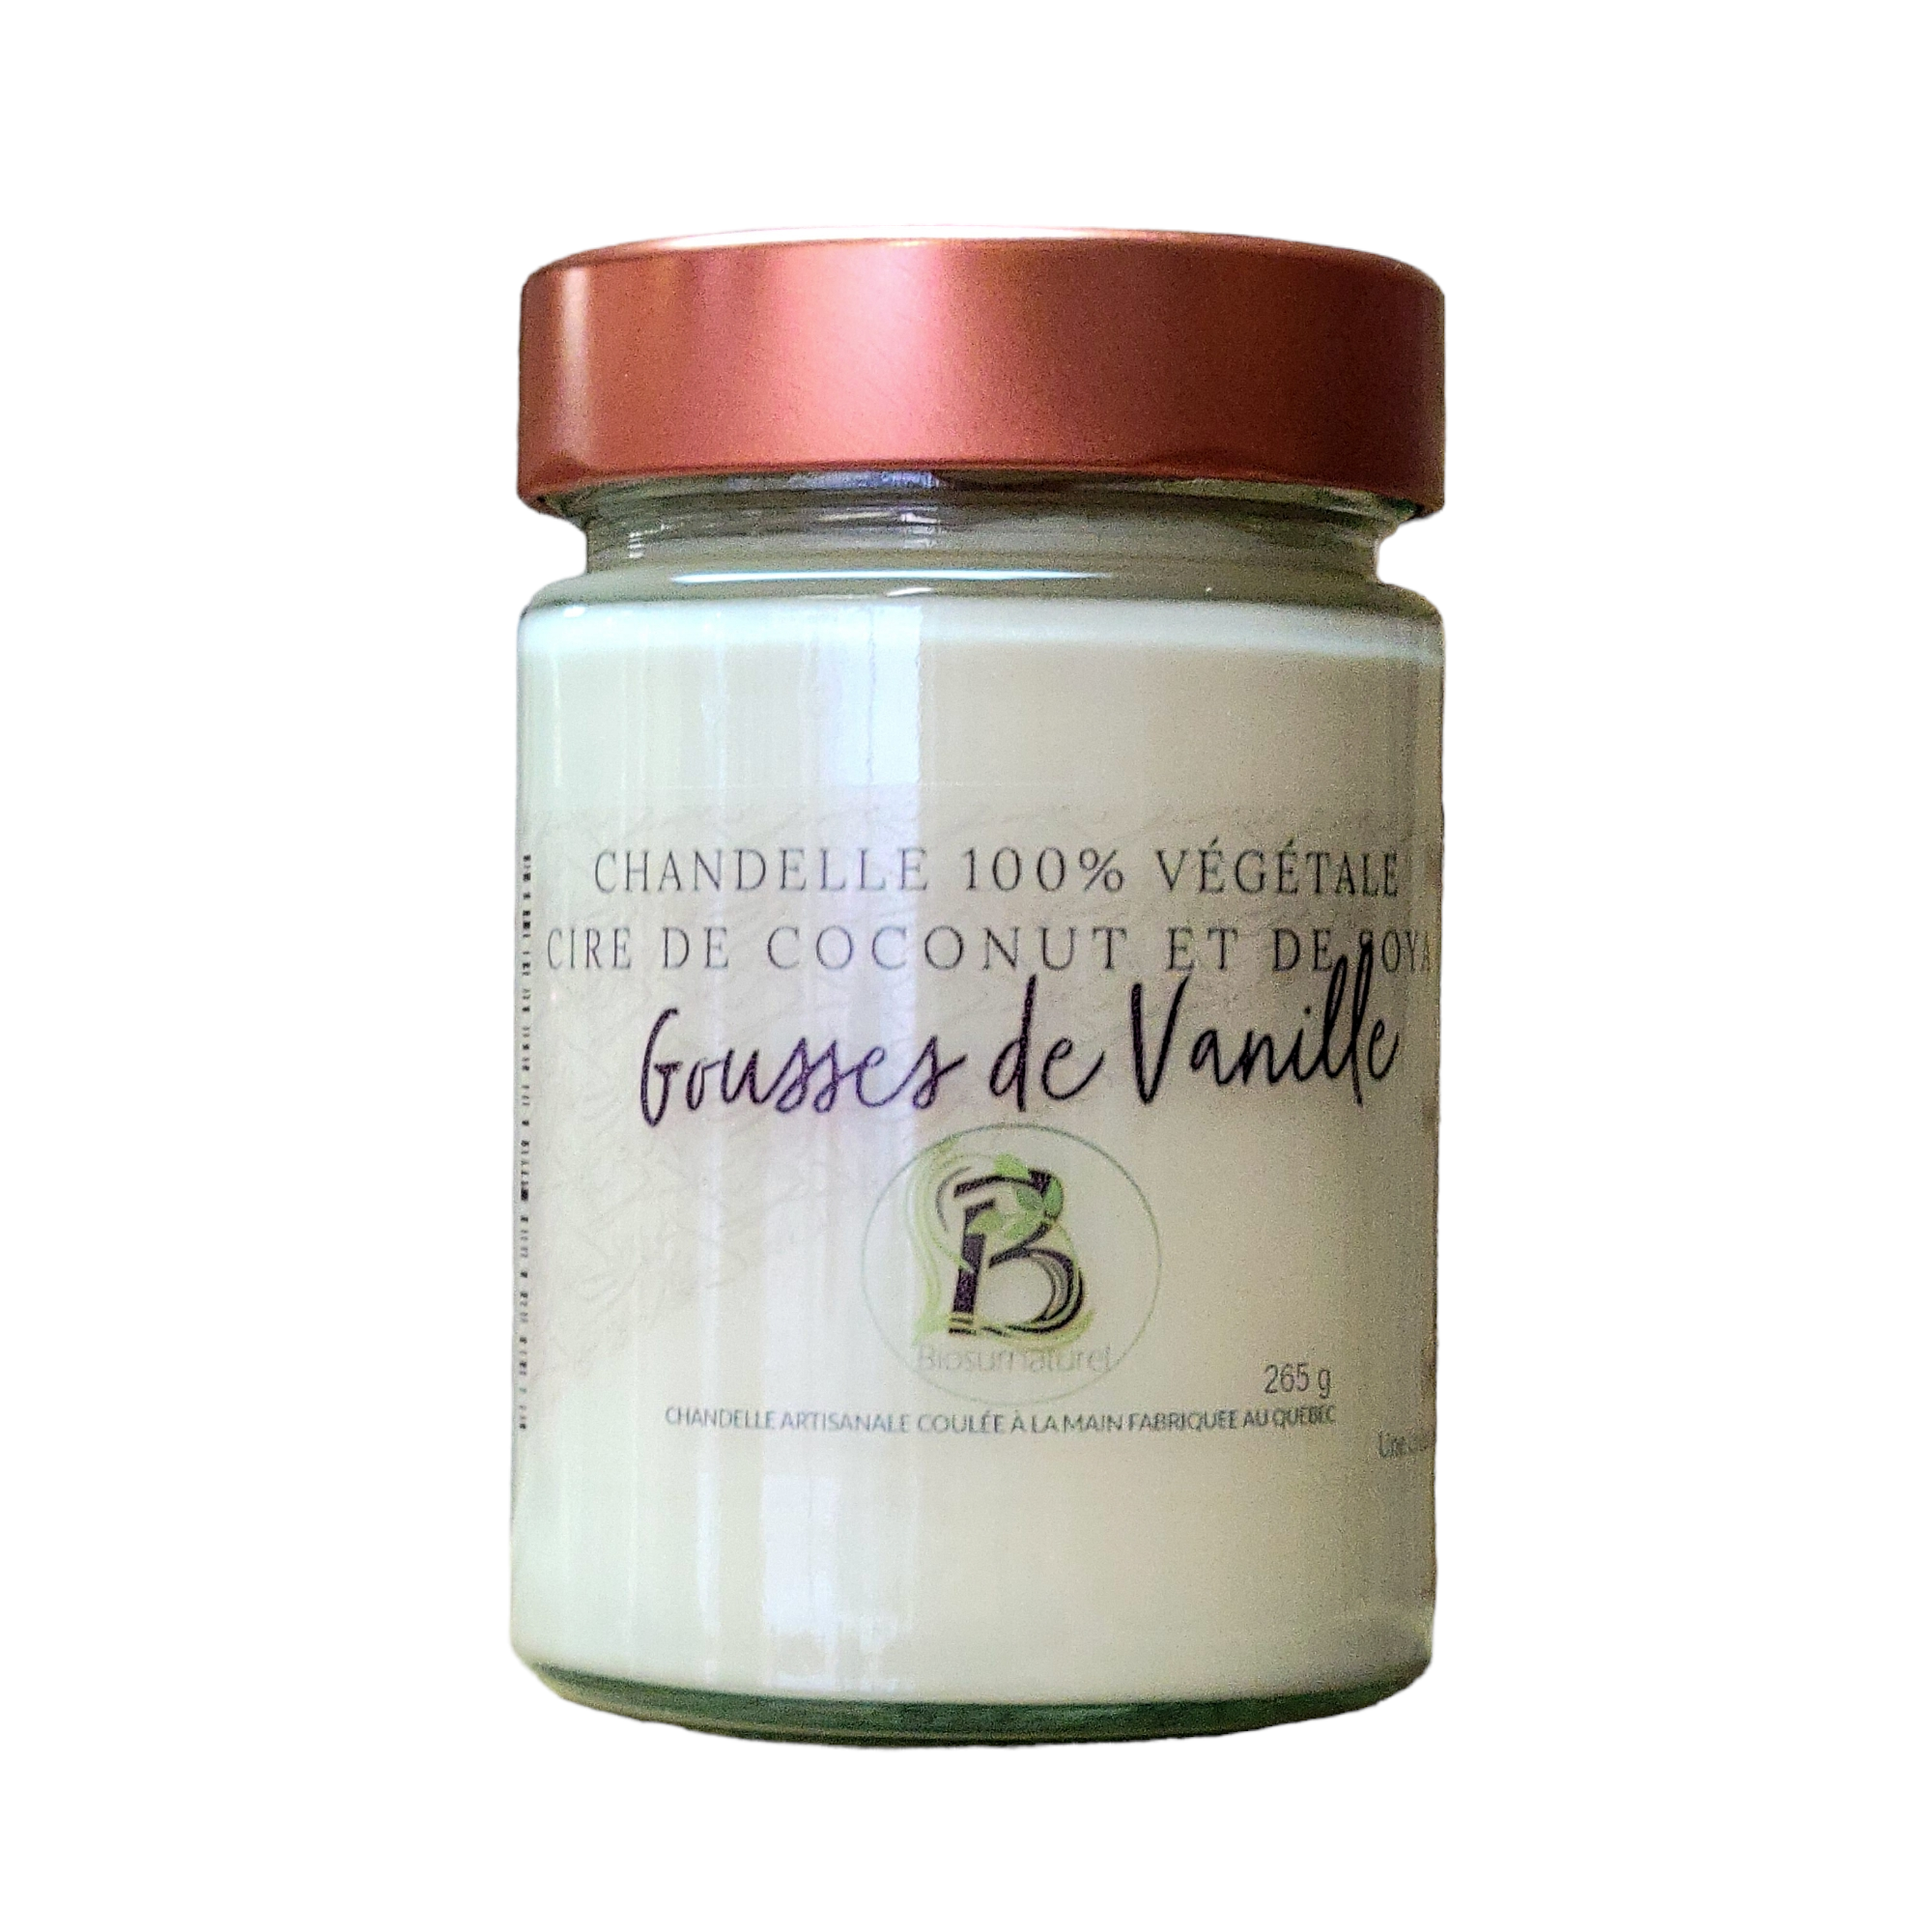 Chandelle Cire Coconut et Soya - Gousse de Vanille - 9 oz